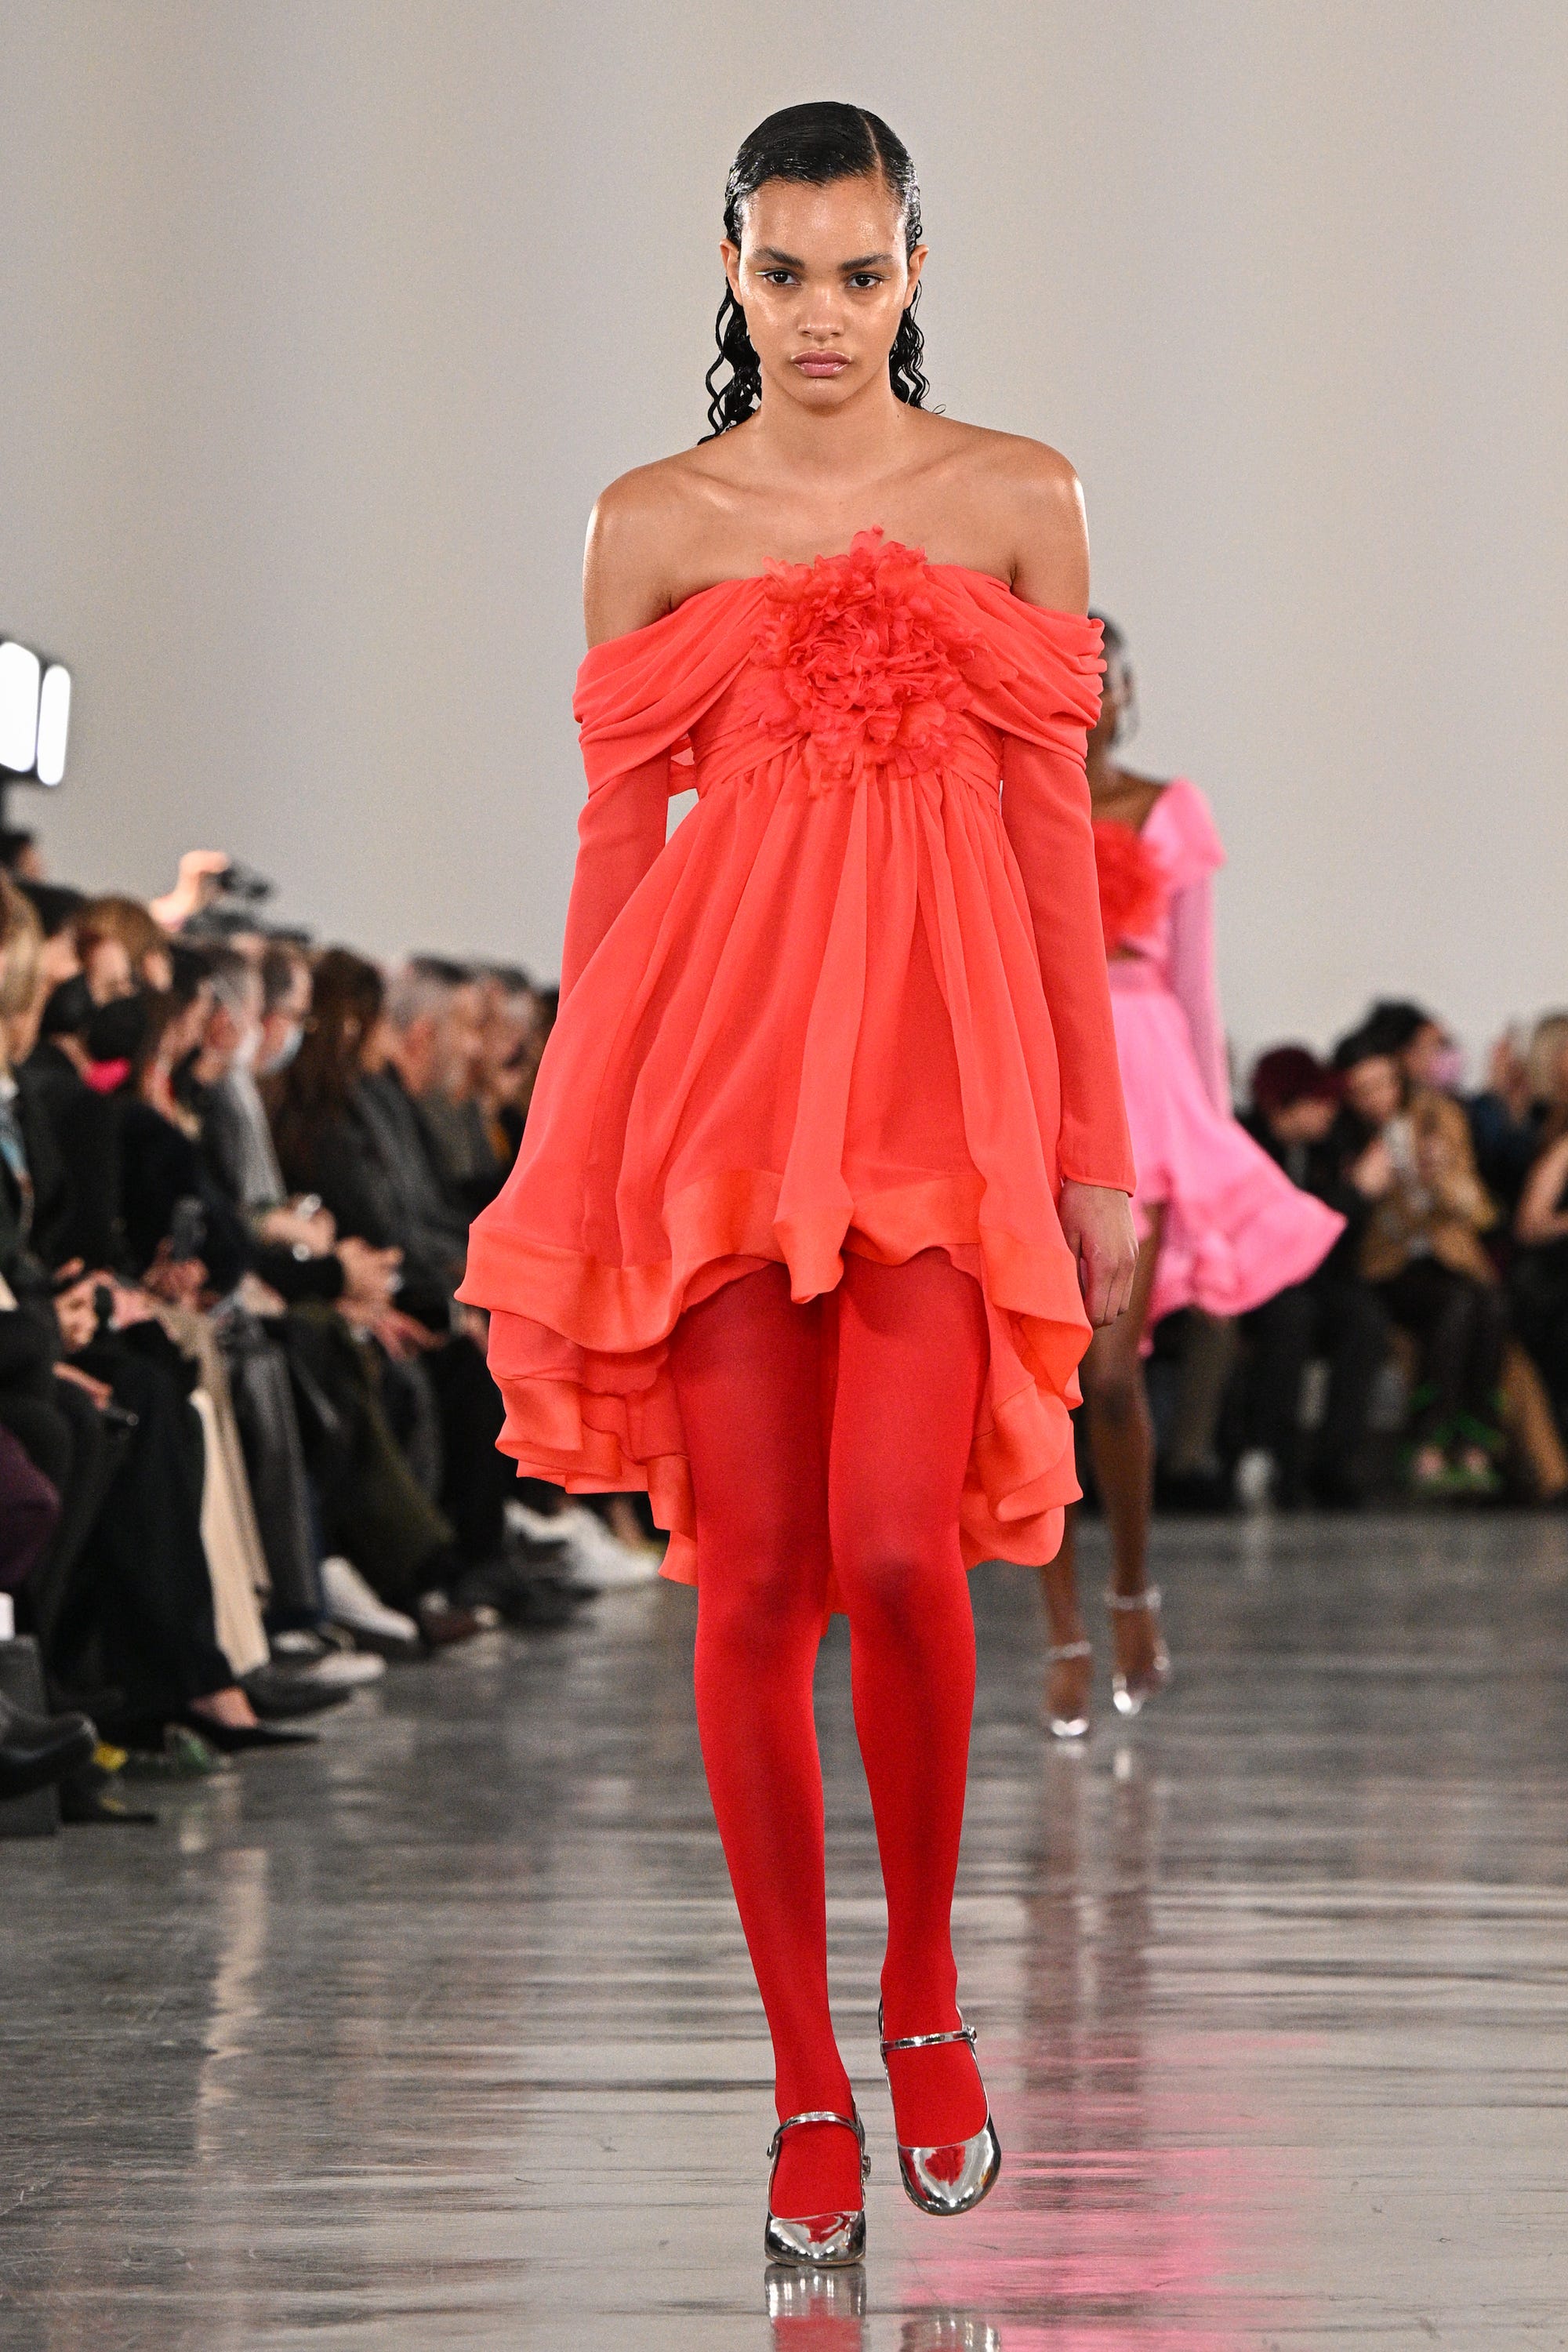 Ein Model läuft über einen Laufsteg und trägt ein schulterfreies rotes Kleid mit roten Strumpfhosen und silbernen Schuhen.